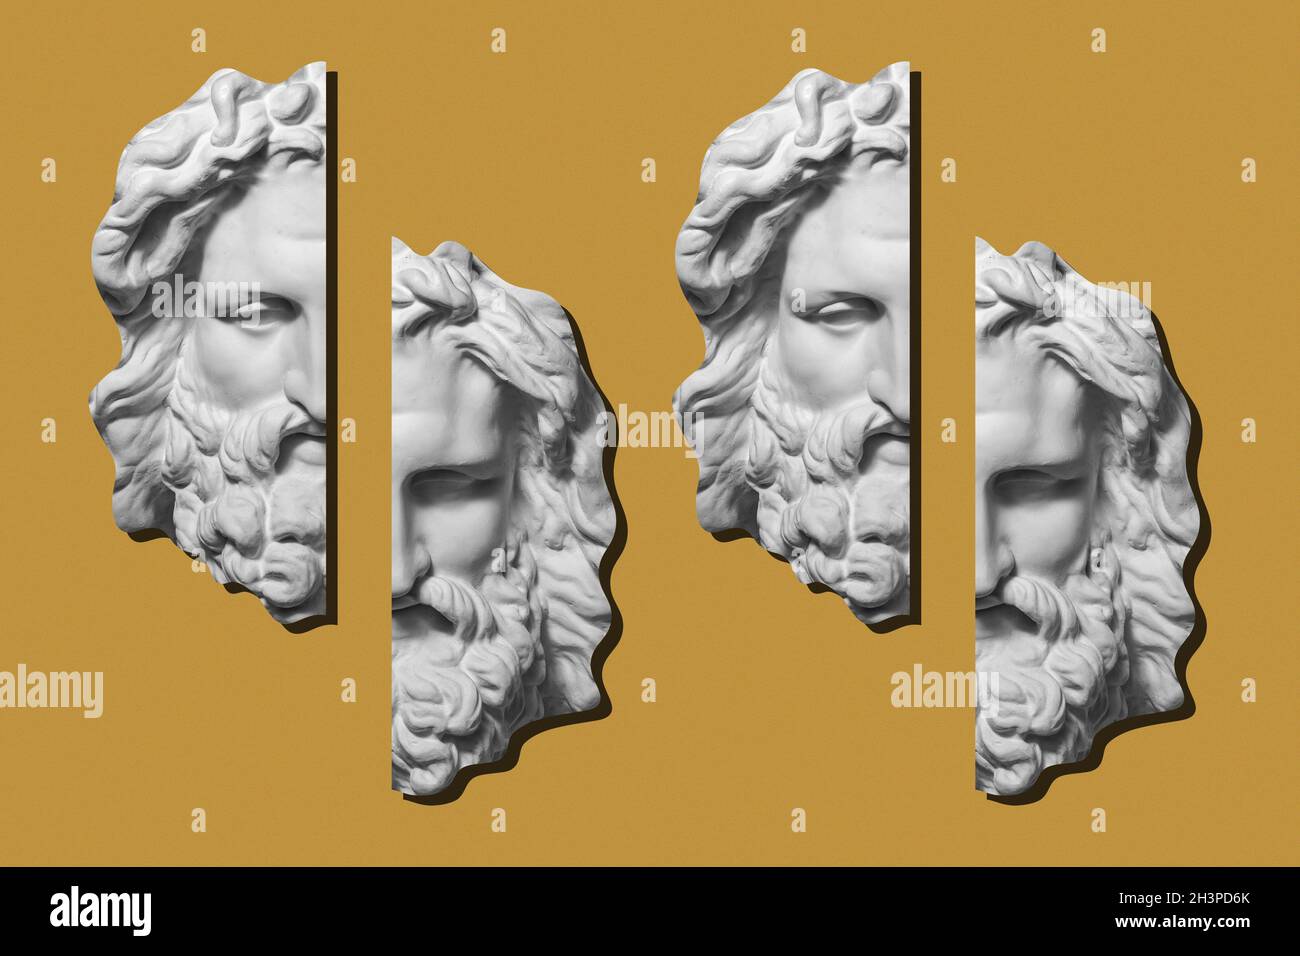 Collage mit Gips antike Skulptur des menschlichen Gesichts in einem Pop-Art-Stil. Modernes kreatives Konzept Bild mit alten Statue Kopf. Stockfoto